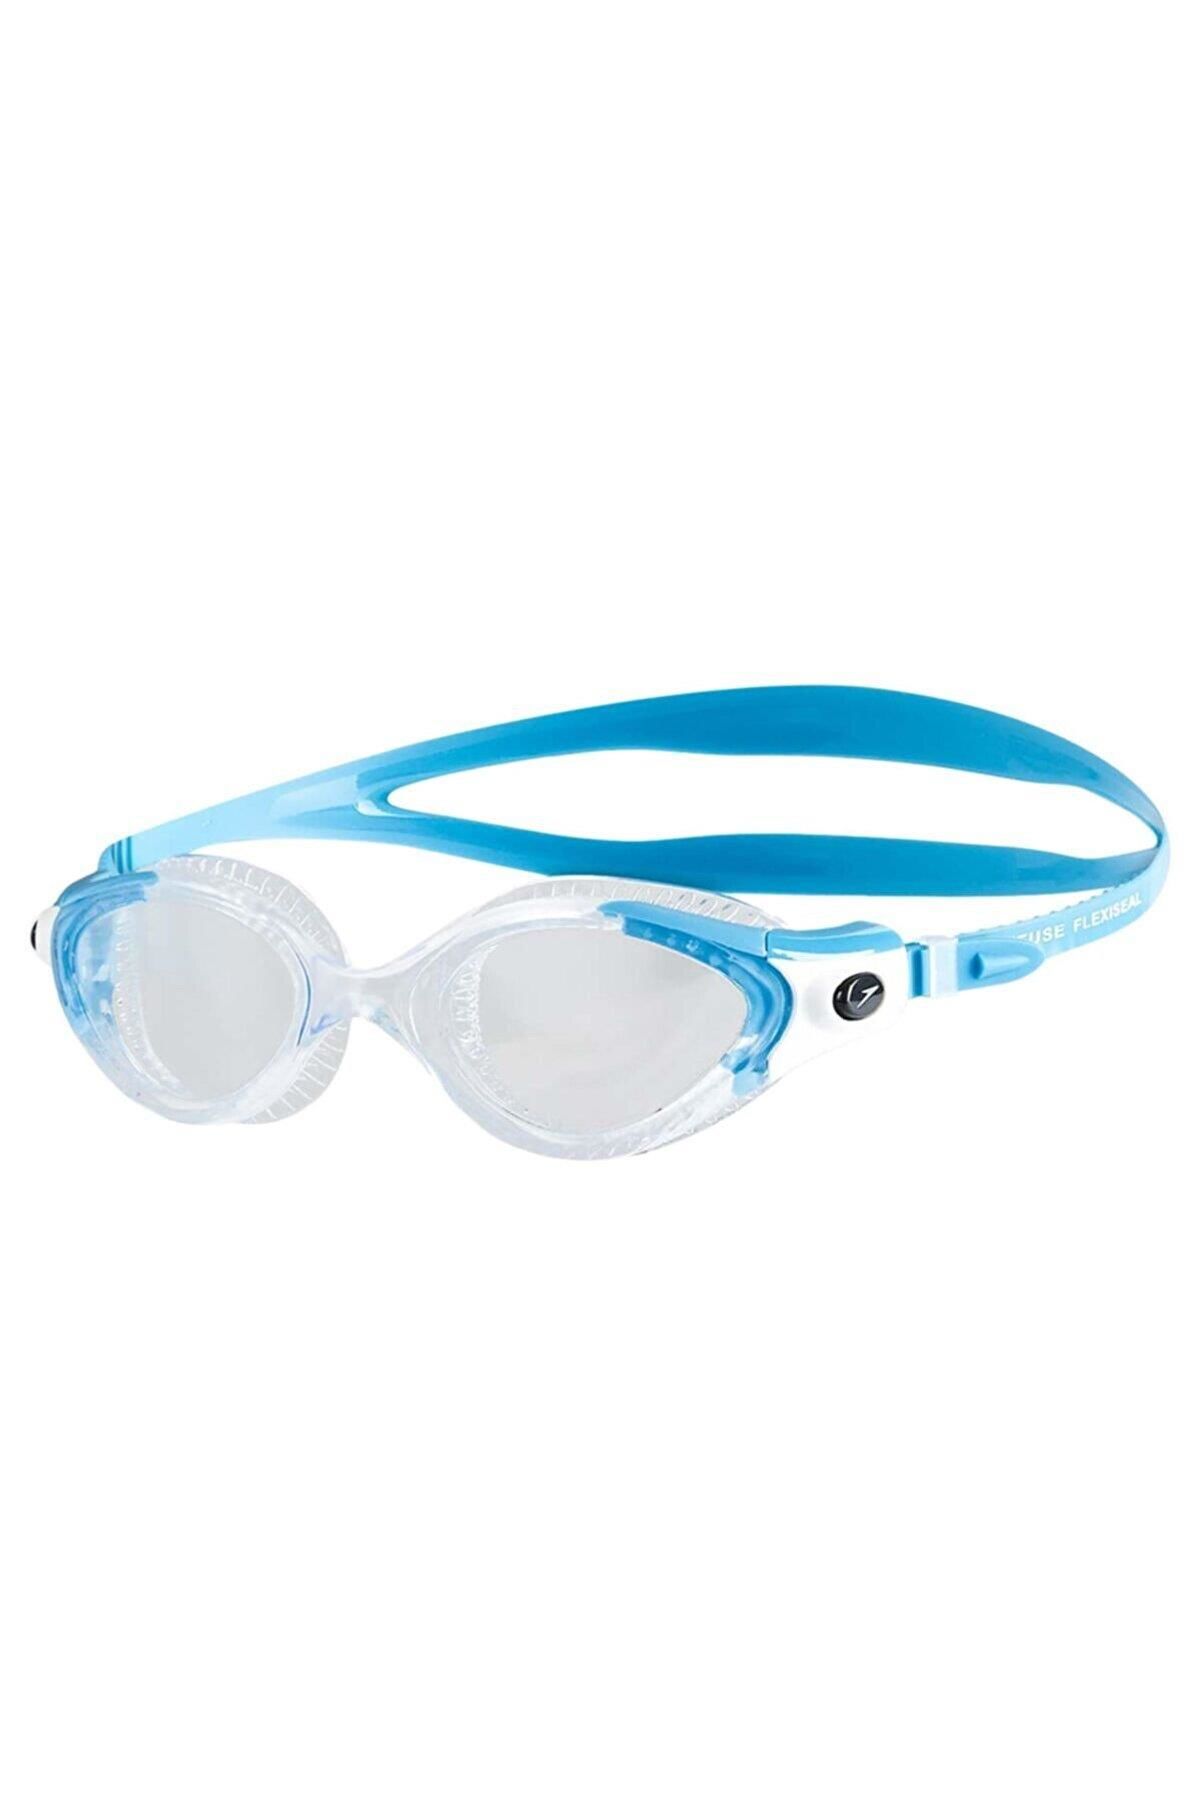 Speedo Futura Biofuse Flexiseal Kadın Yüzücü Gözlüğü 8-11533B979